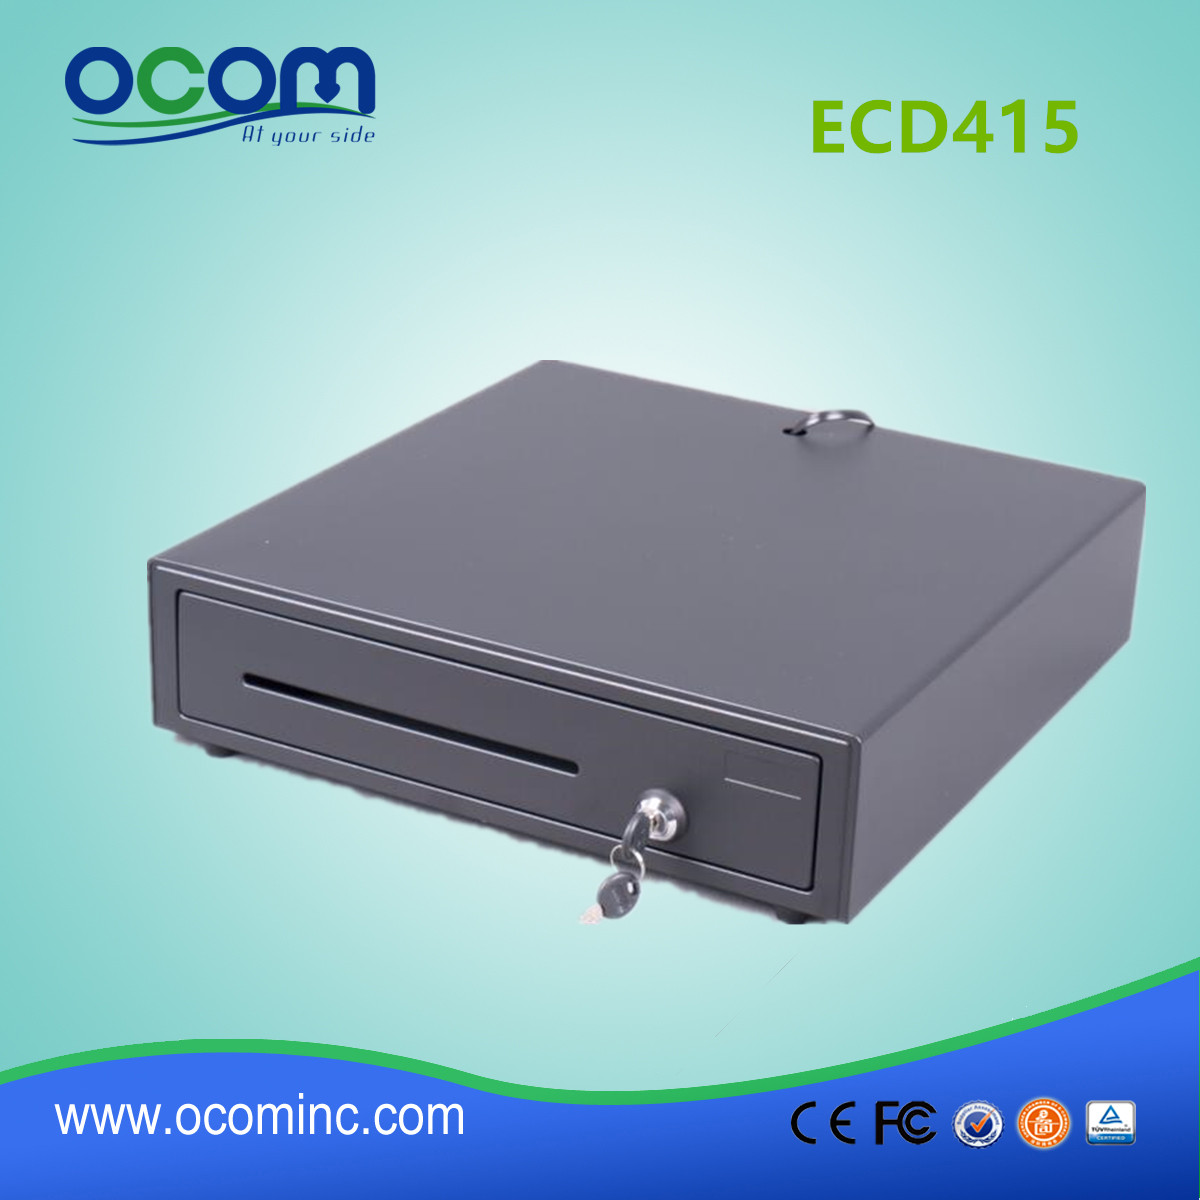 نموذج جديد ECD415 الكهربائية النقدية المعدنية POS النقدية درج 4 أو 5 قابل للتعديل حاملي الفاتورة 8 حاملي القطع النقدية